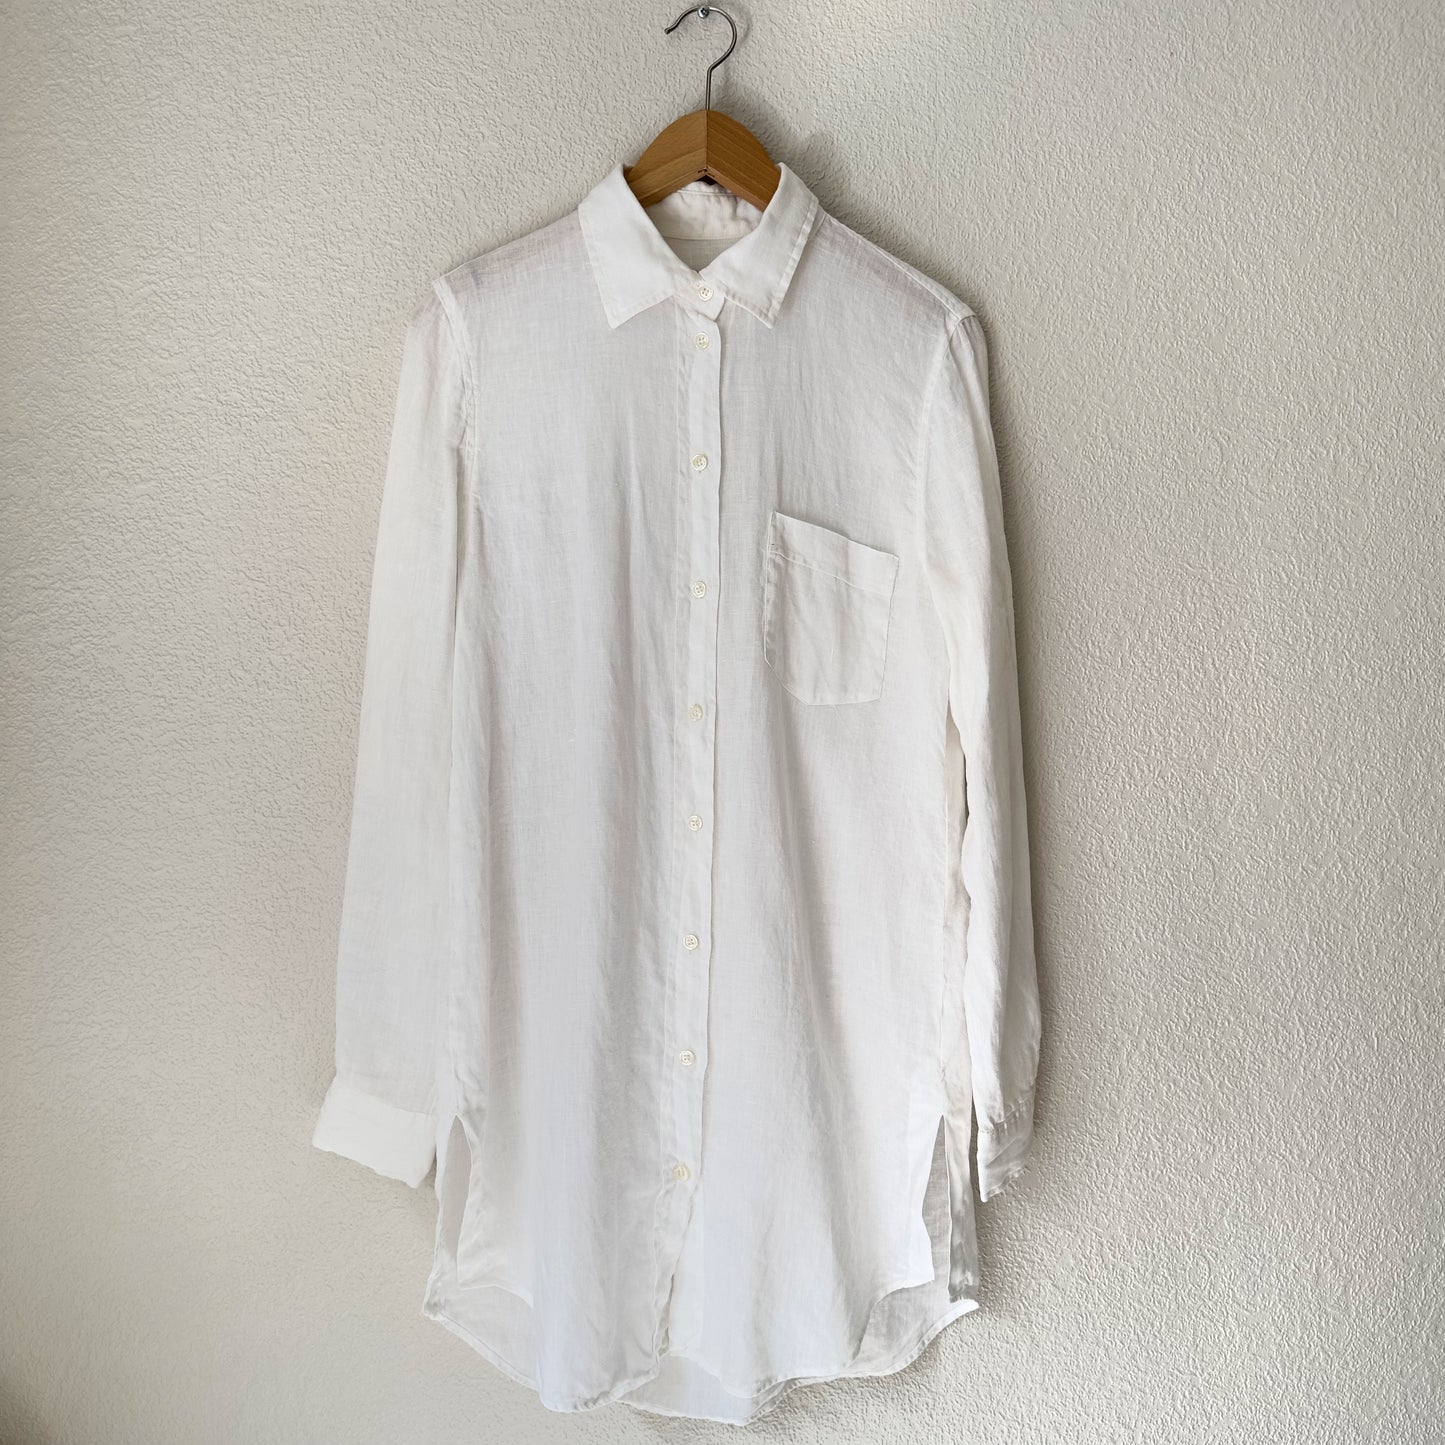 100% Linen Shirt in white